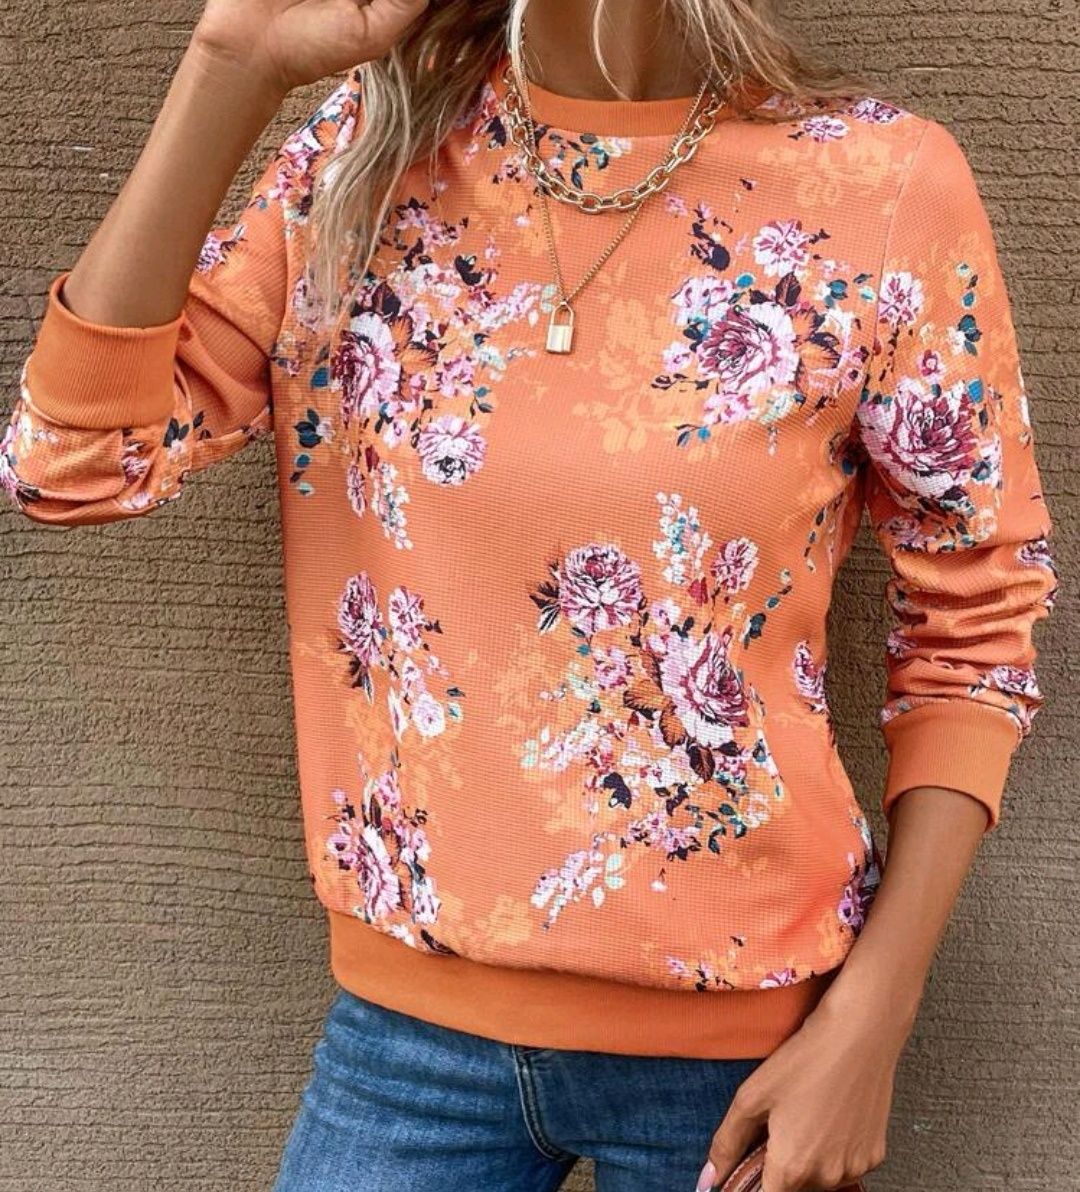 Nowa piękna bluza z motywem kwiatowym w rozmiarze S.